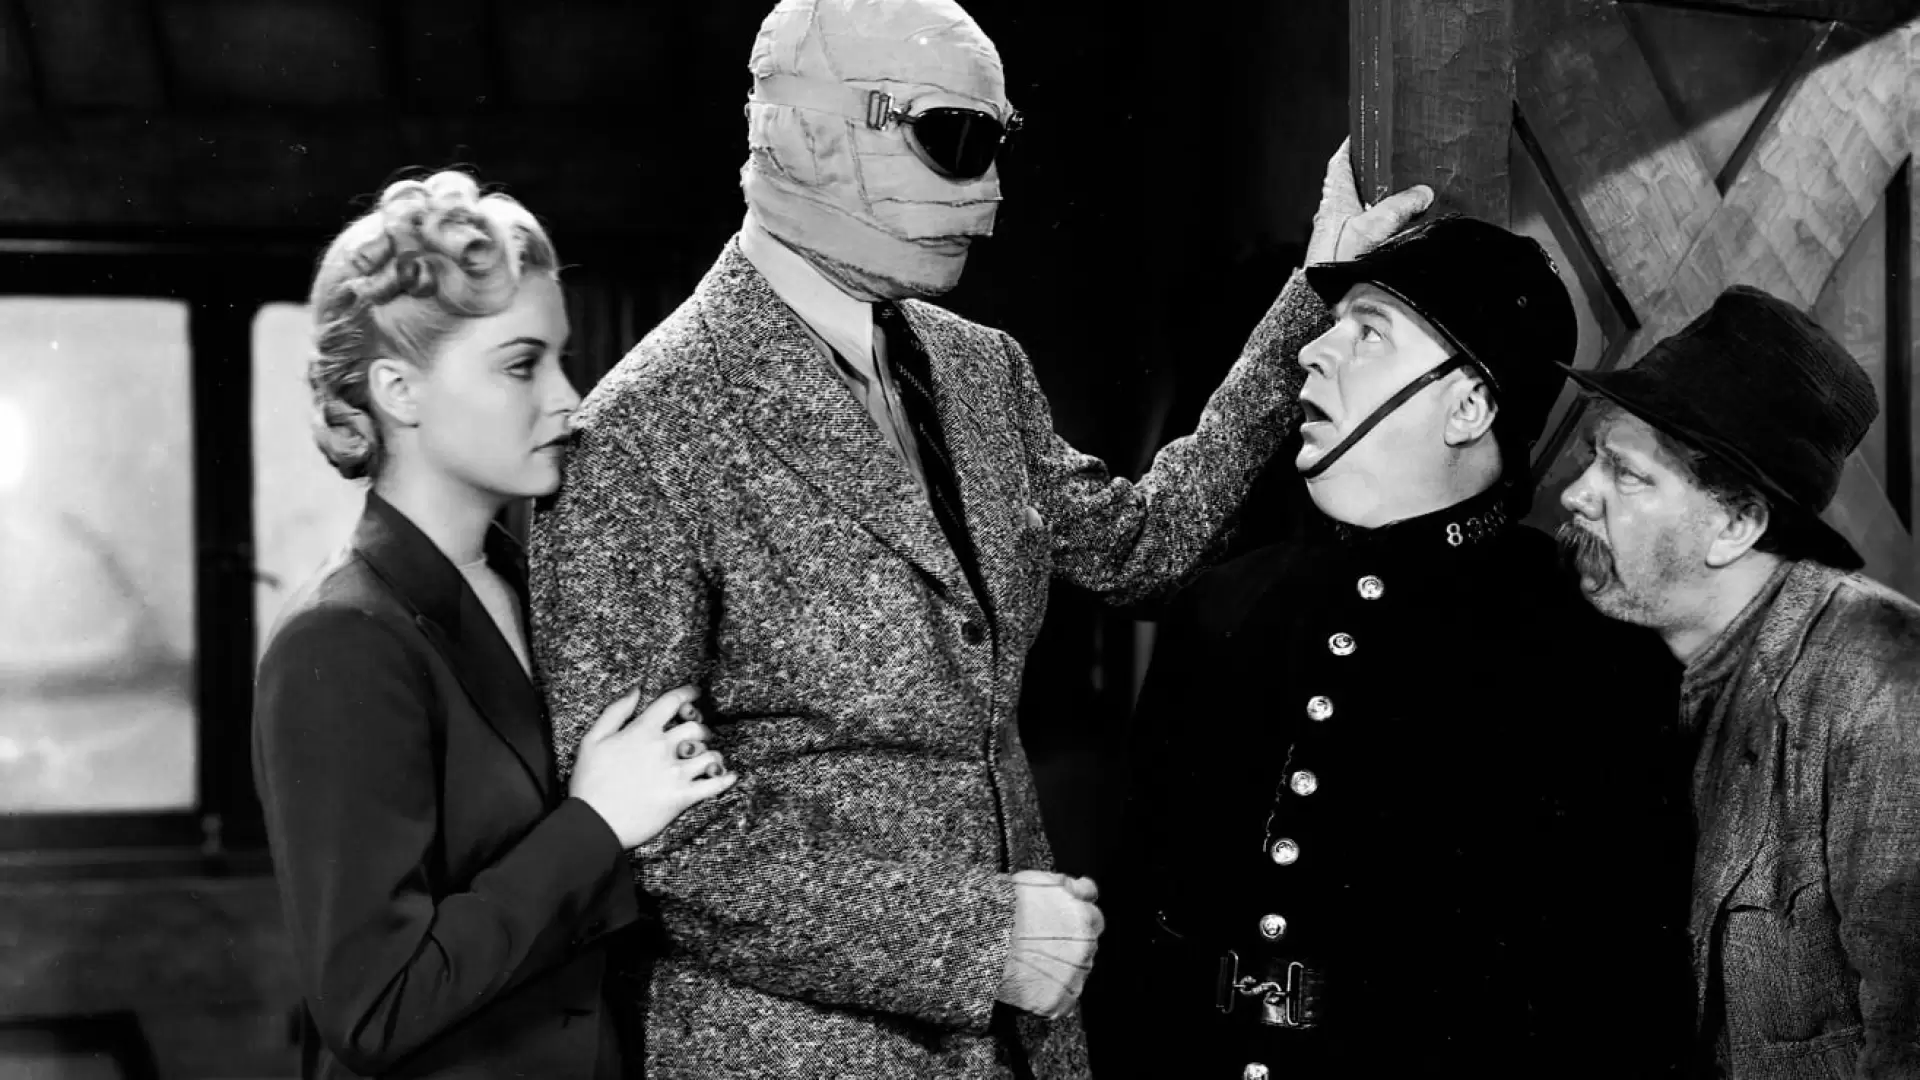 دانلود فیلم The Invisible Man Returns 1940